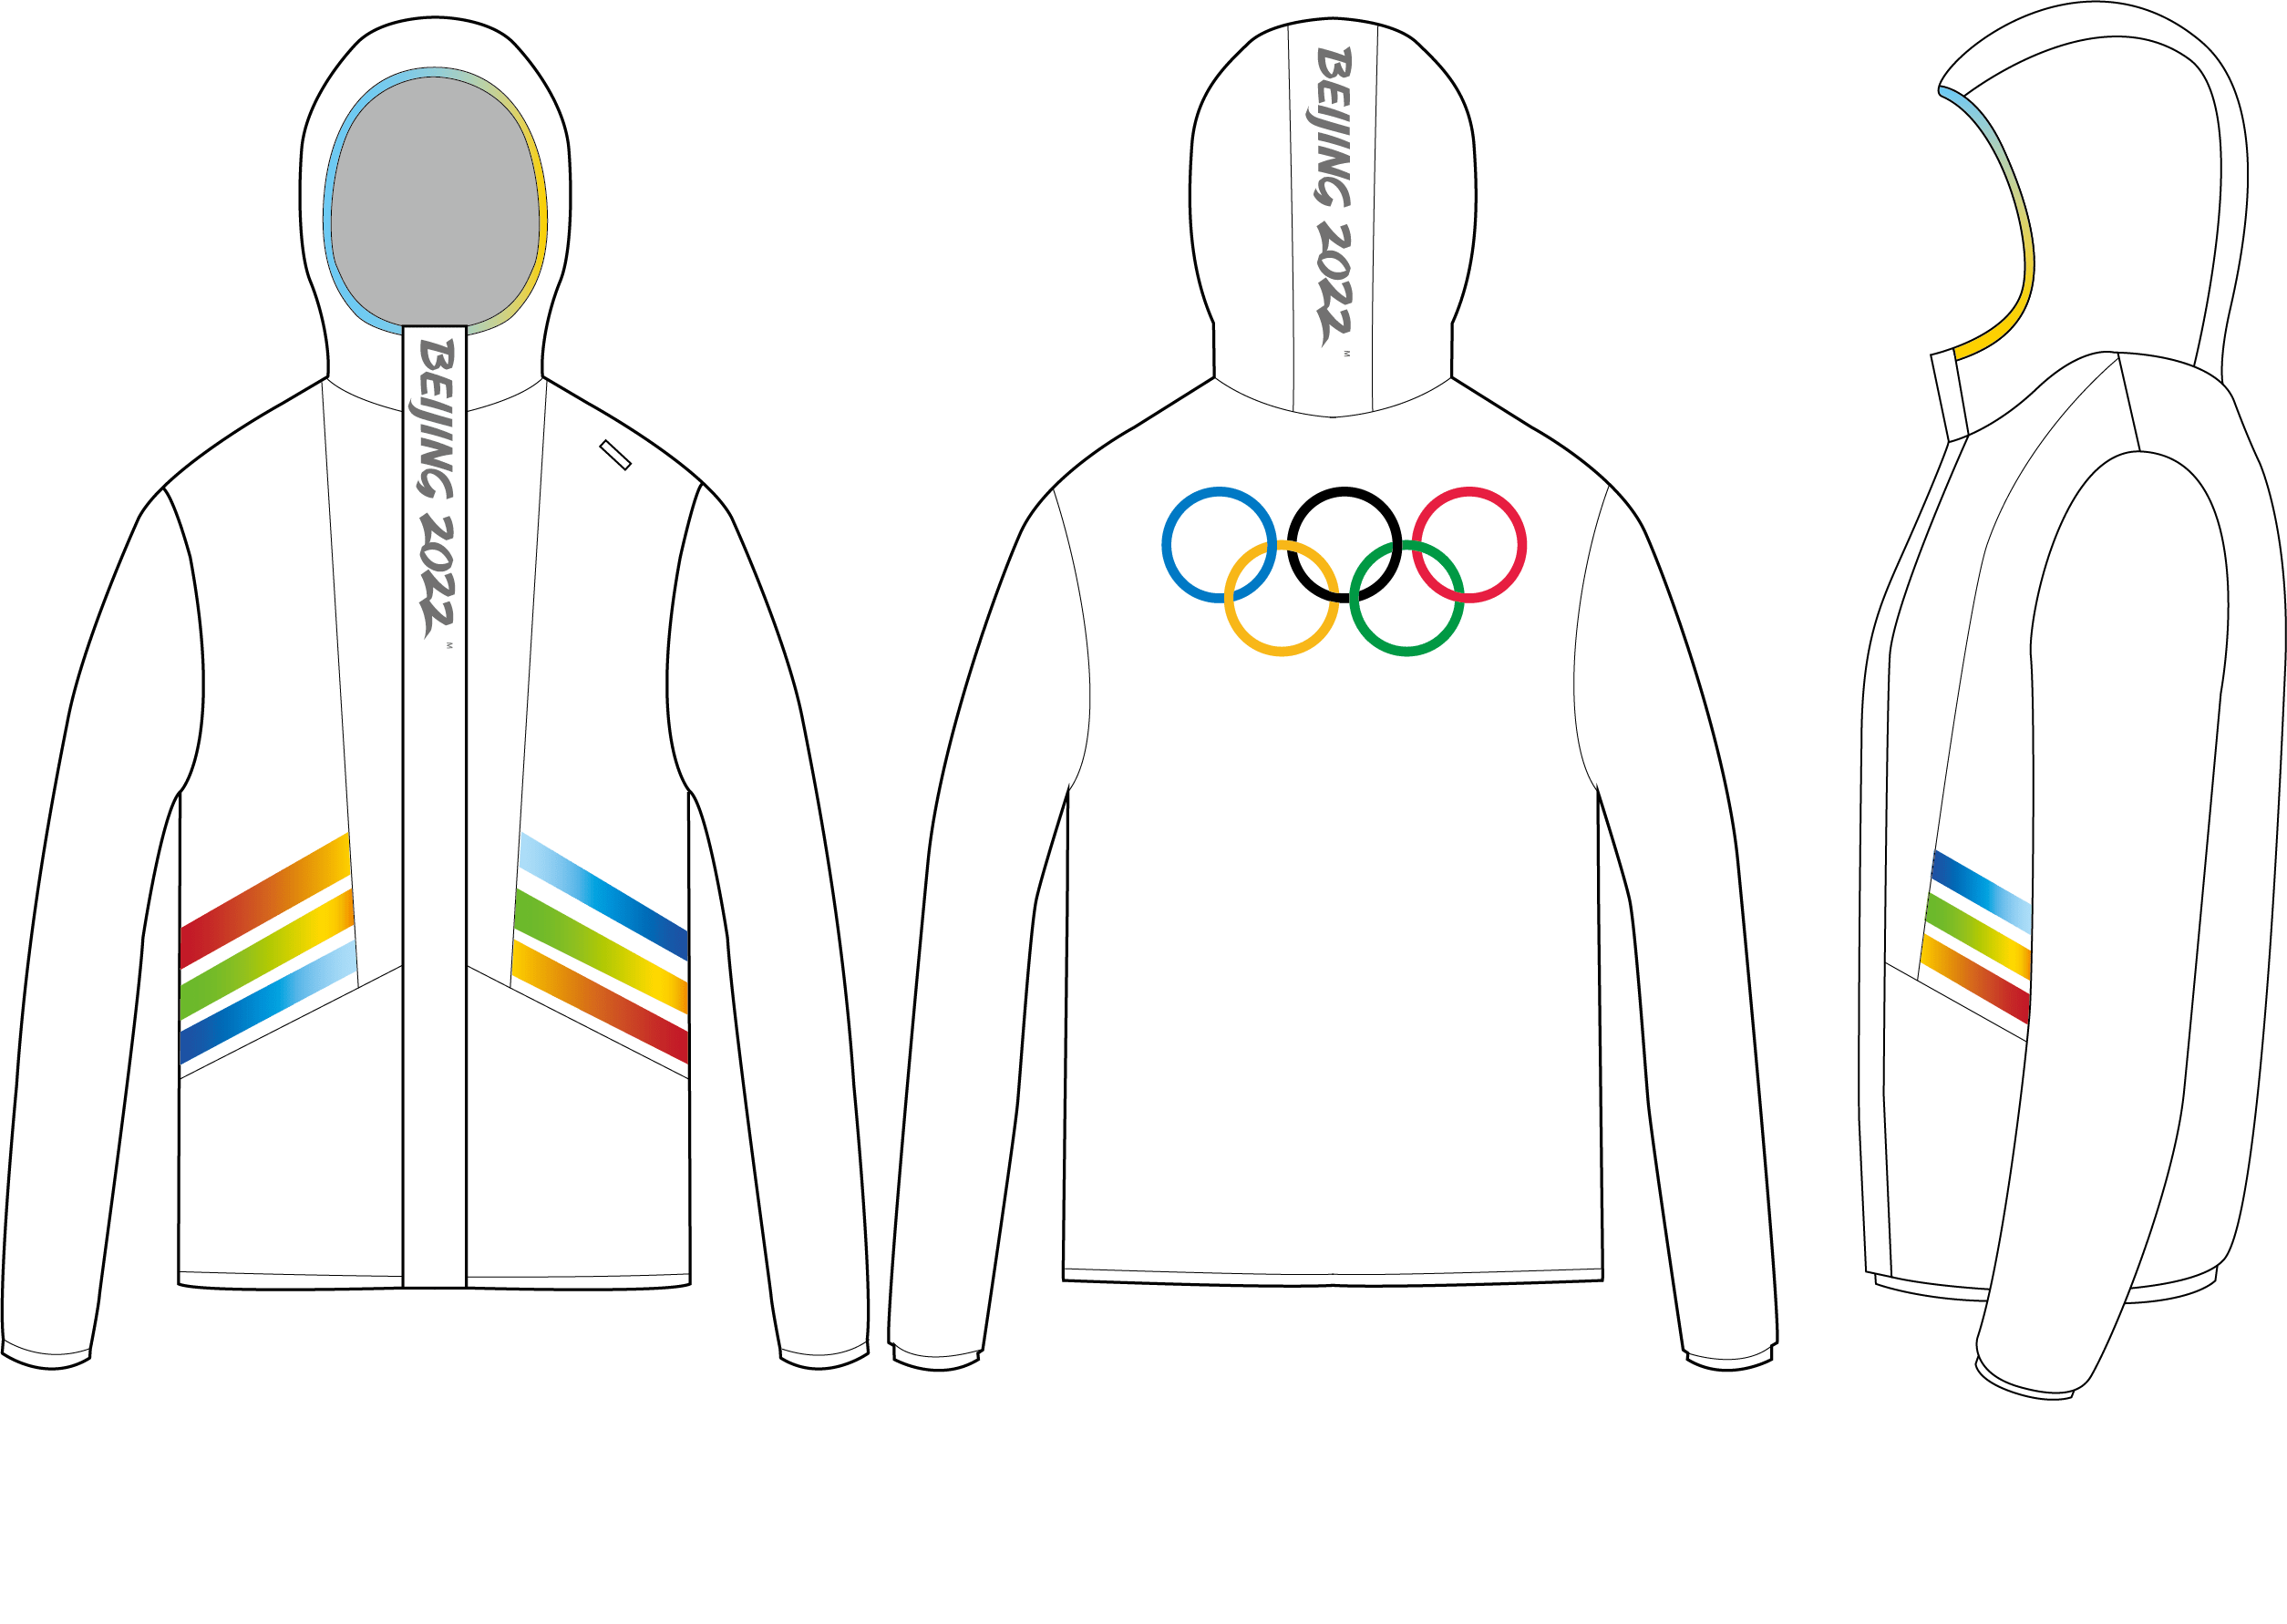 北京冬奥会服装设计图图片